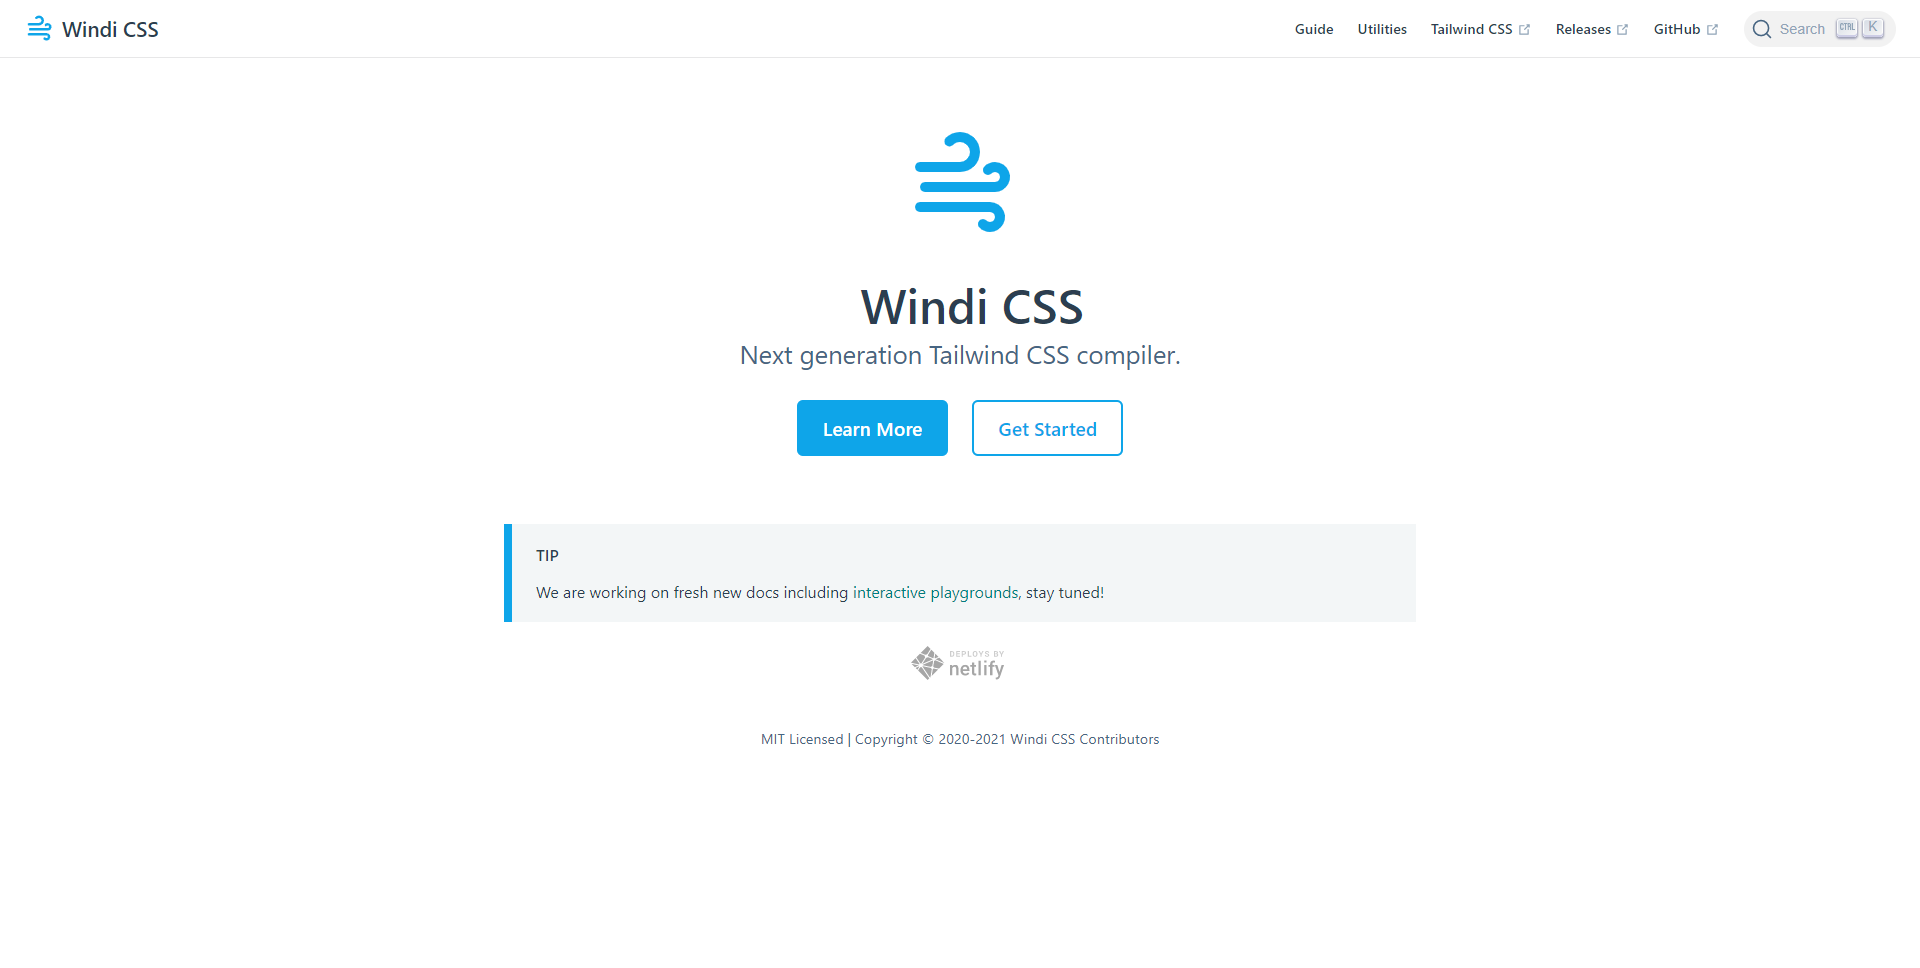 Windi CSS landing page